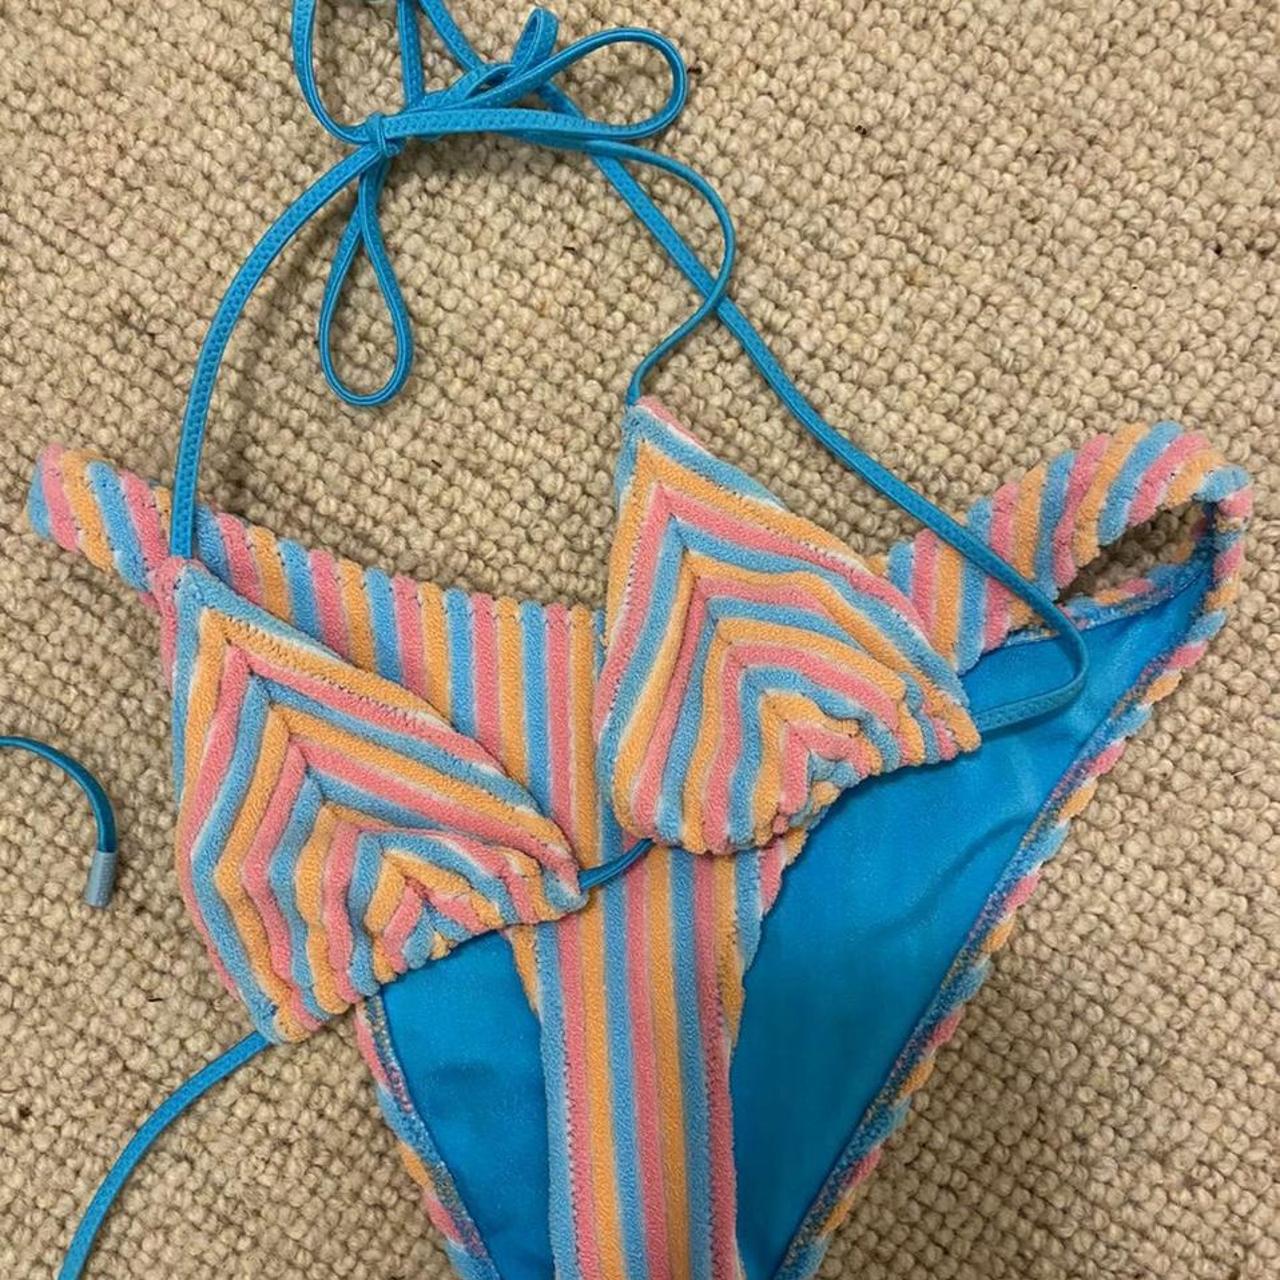 Triangl swim sherbet stripe set 💘 Only tried on, - Depop